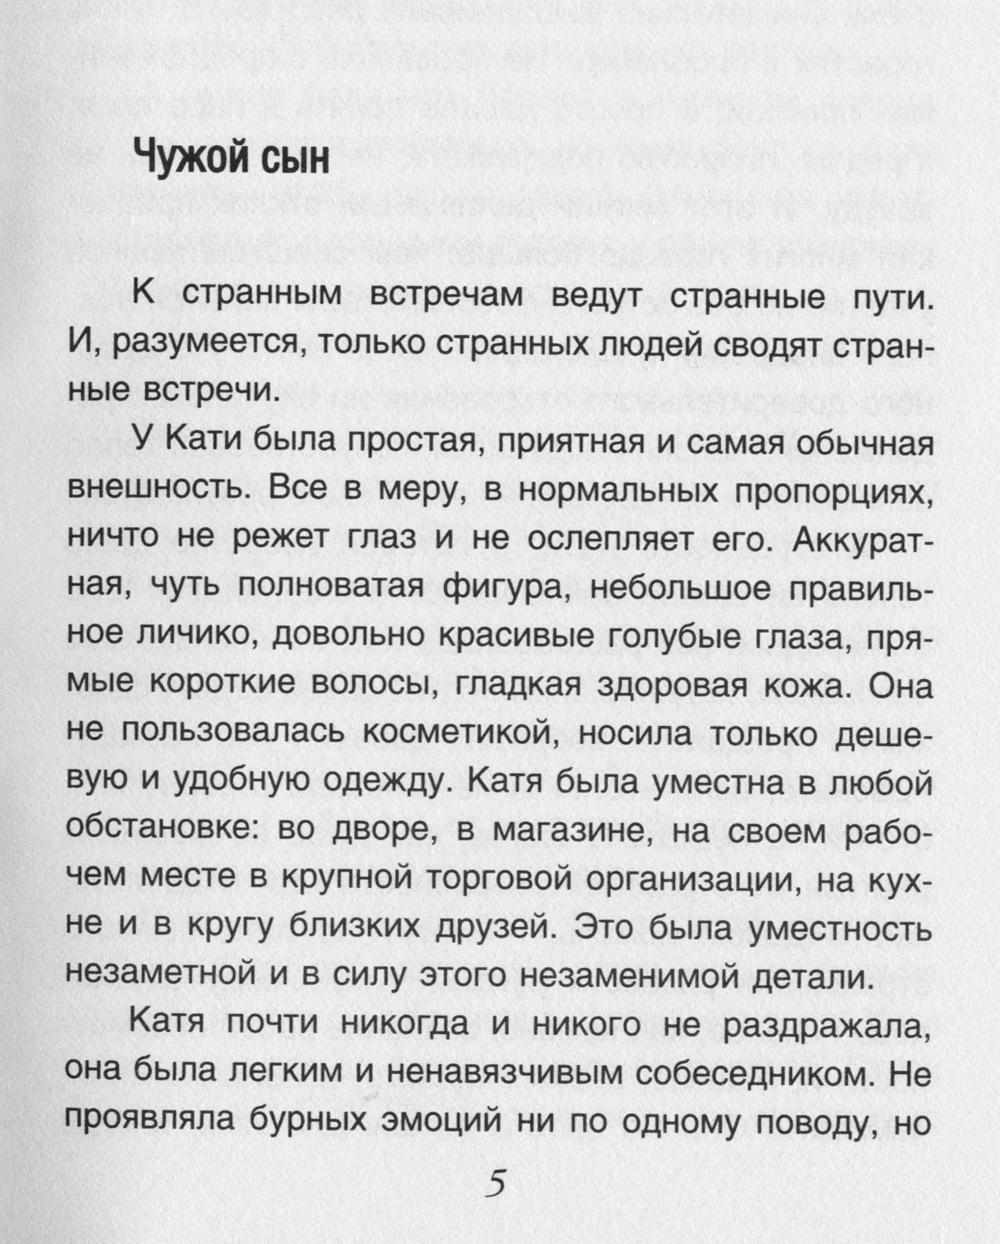 Невыдуманные истории Евгении Михайловой (комплект из 2-х книг)